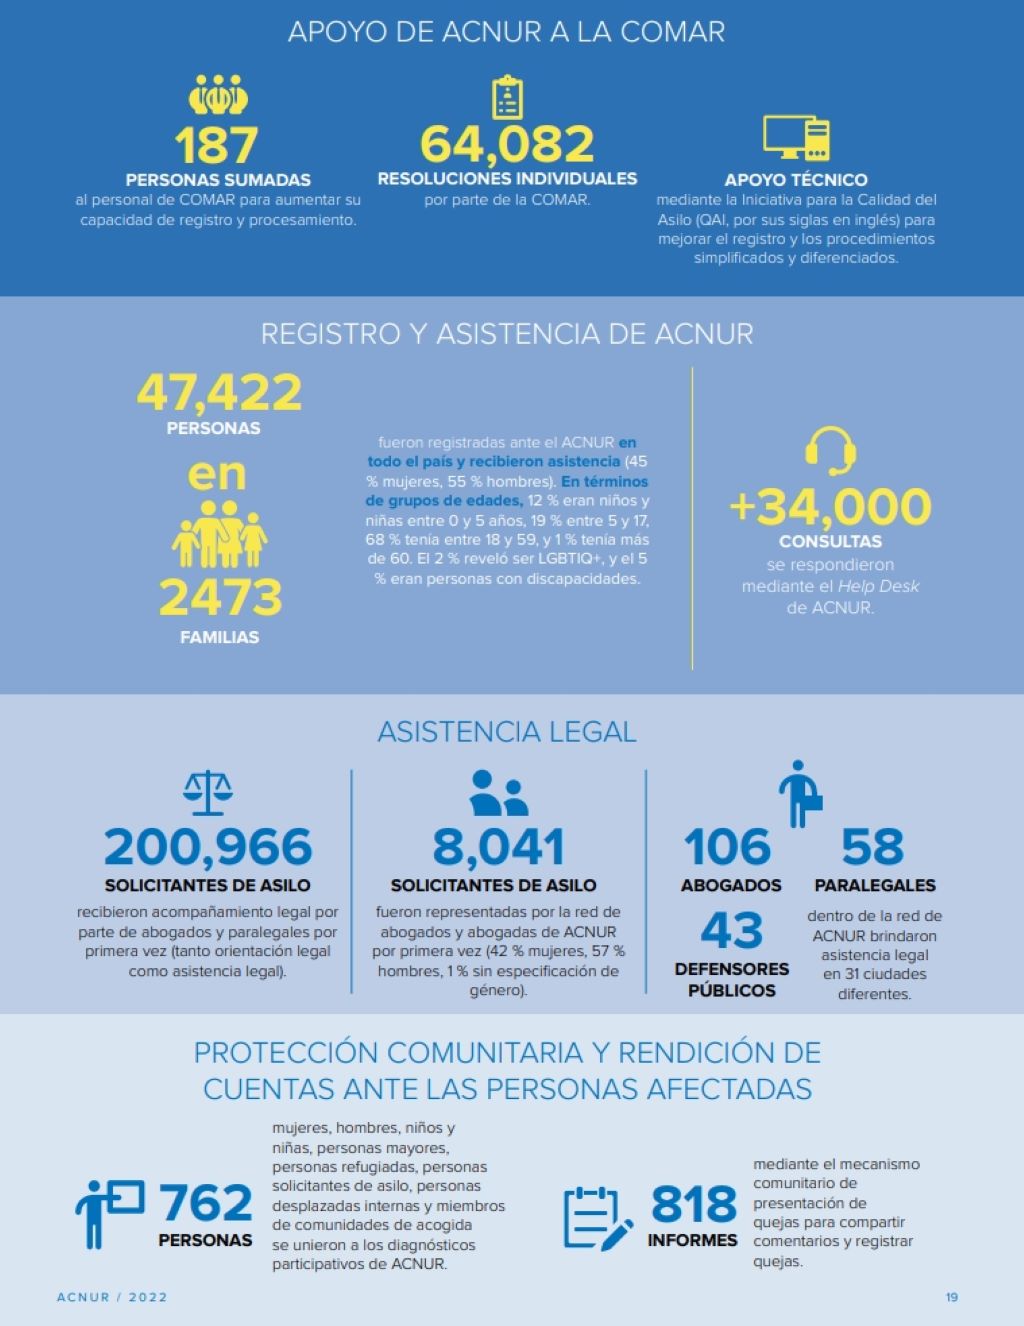 México registró 118.756 solicitudes de asilo en 2022 - noticiacn